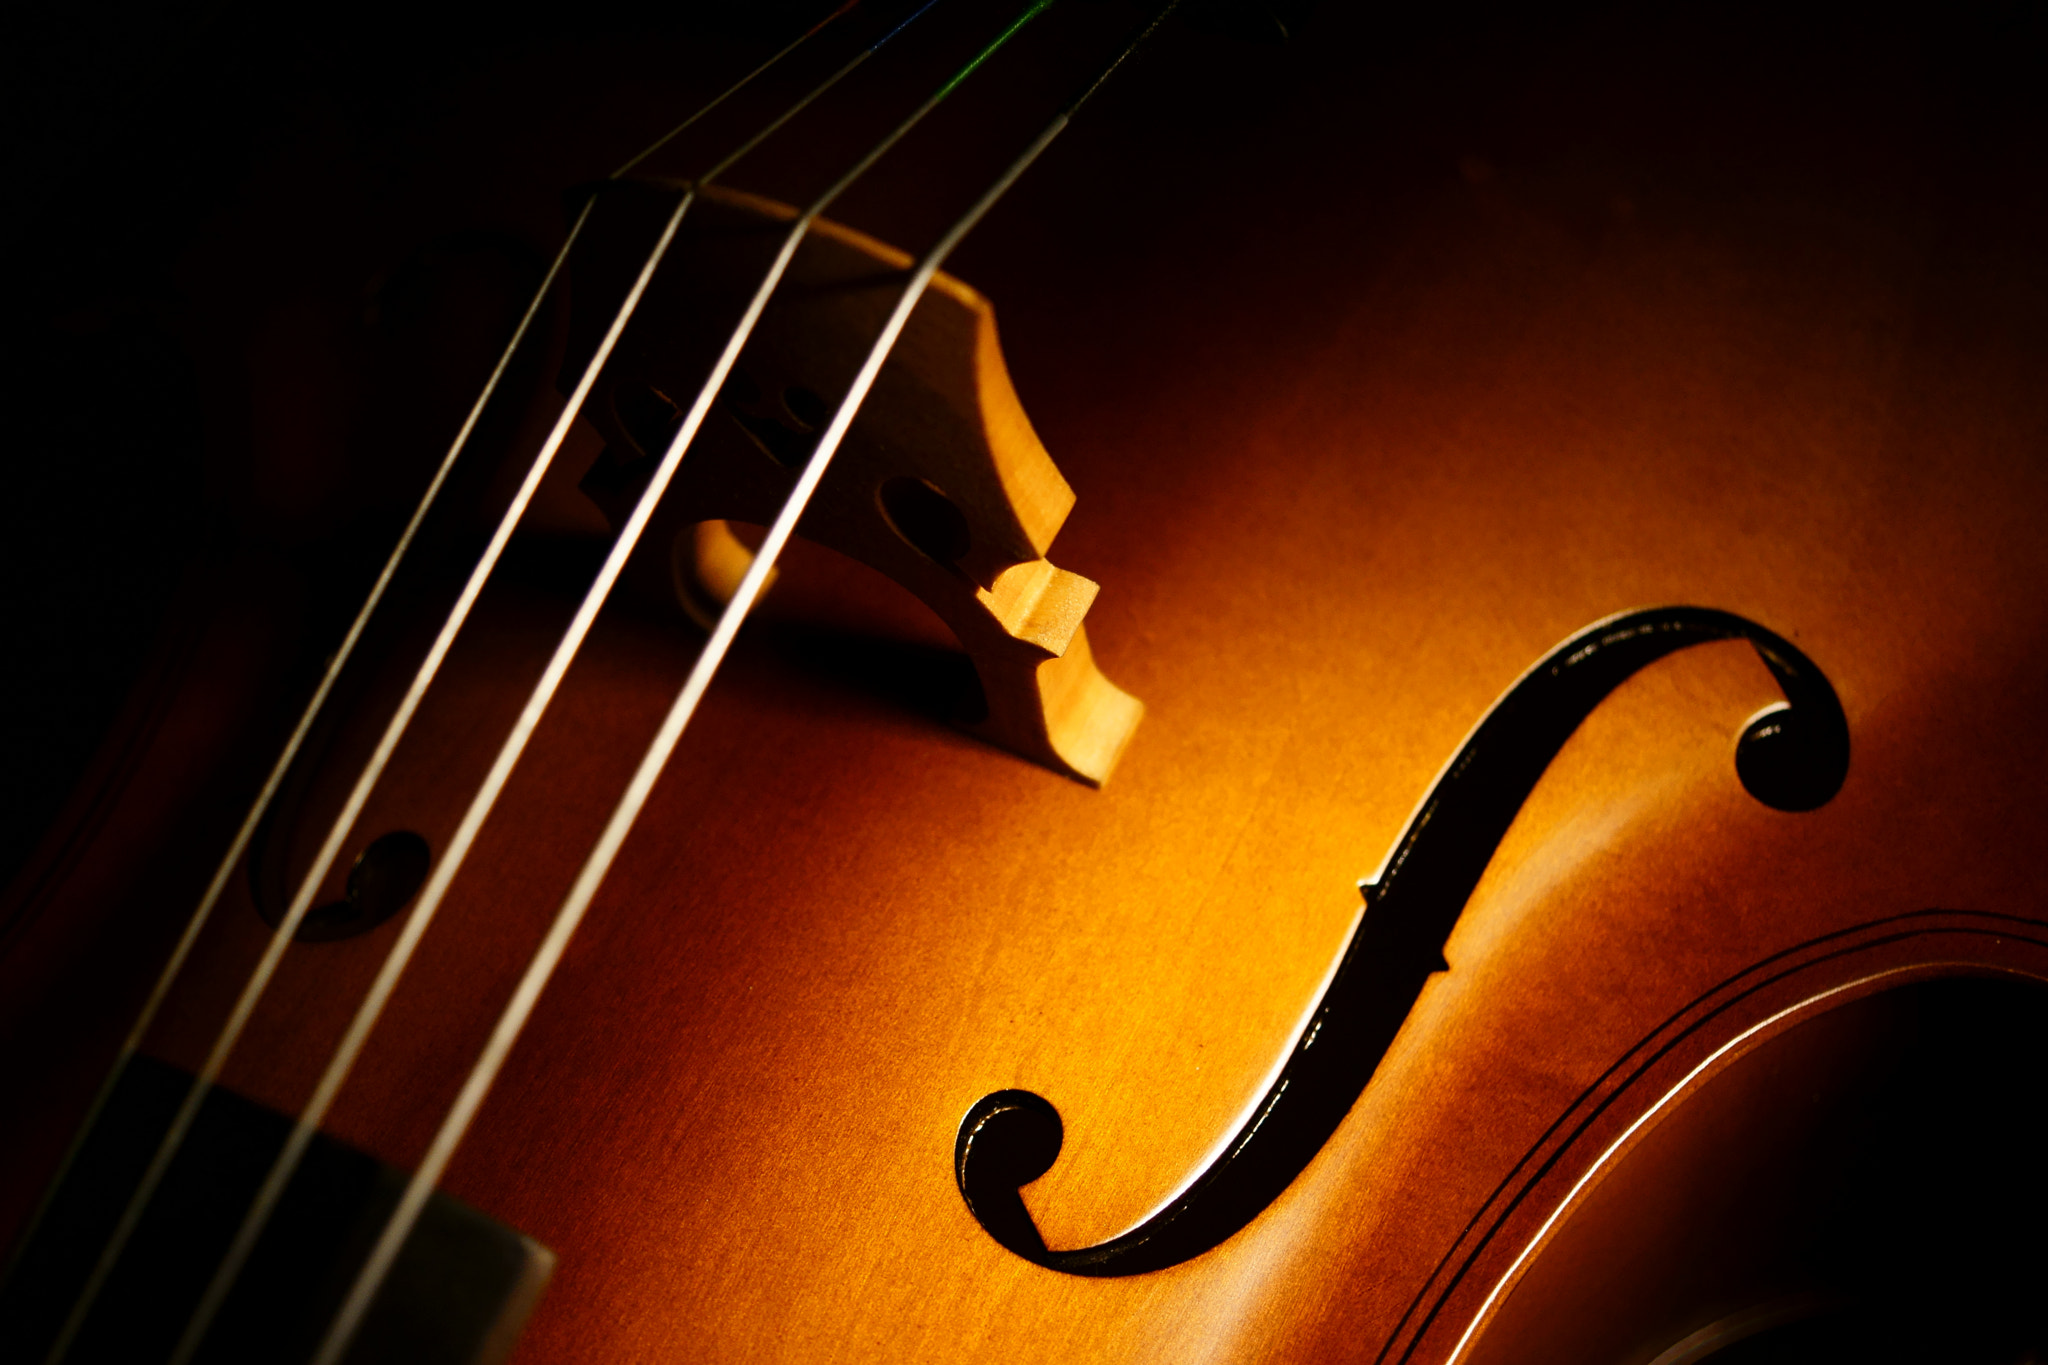 Sony Alpha NEX-7 sample photo. Cello harmony photography